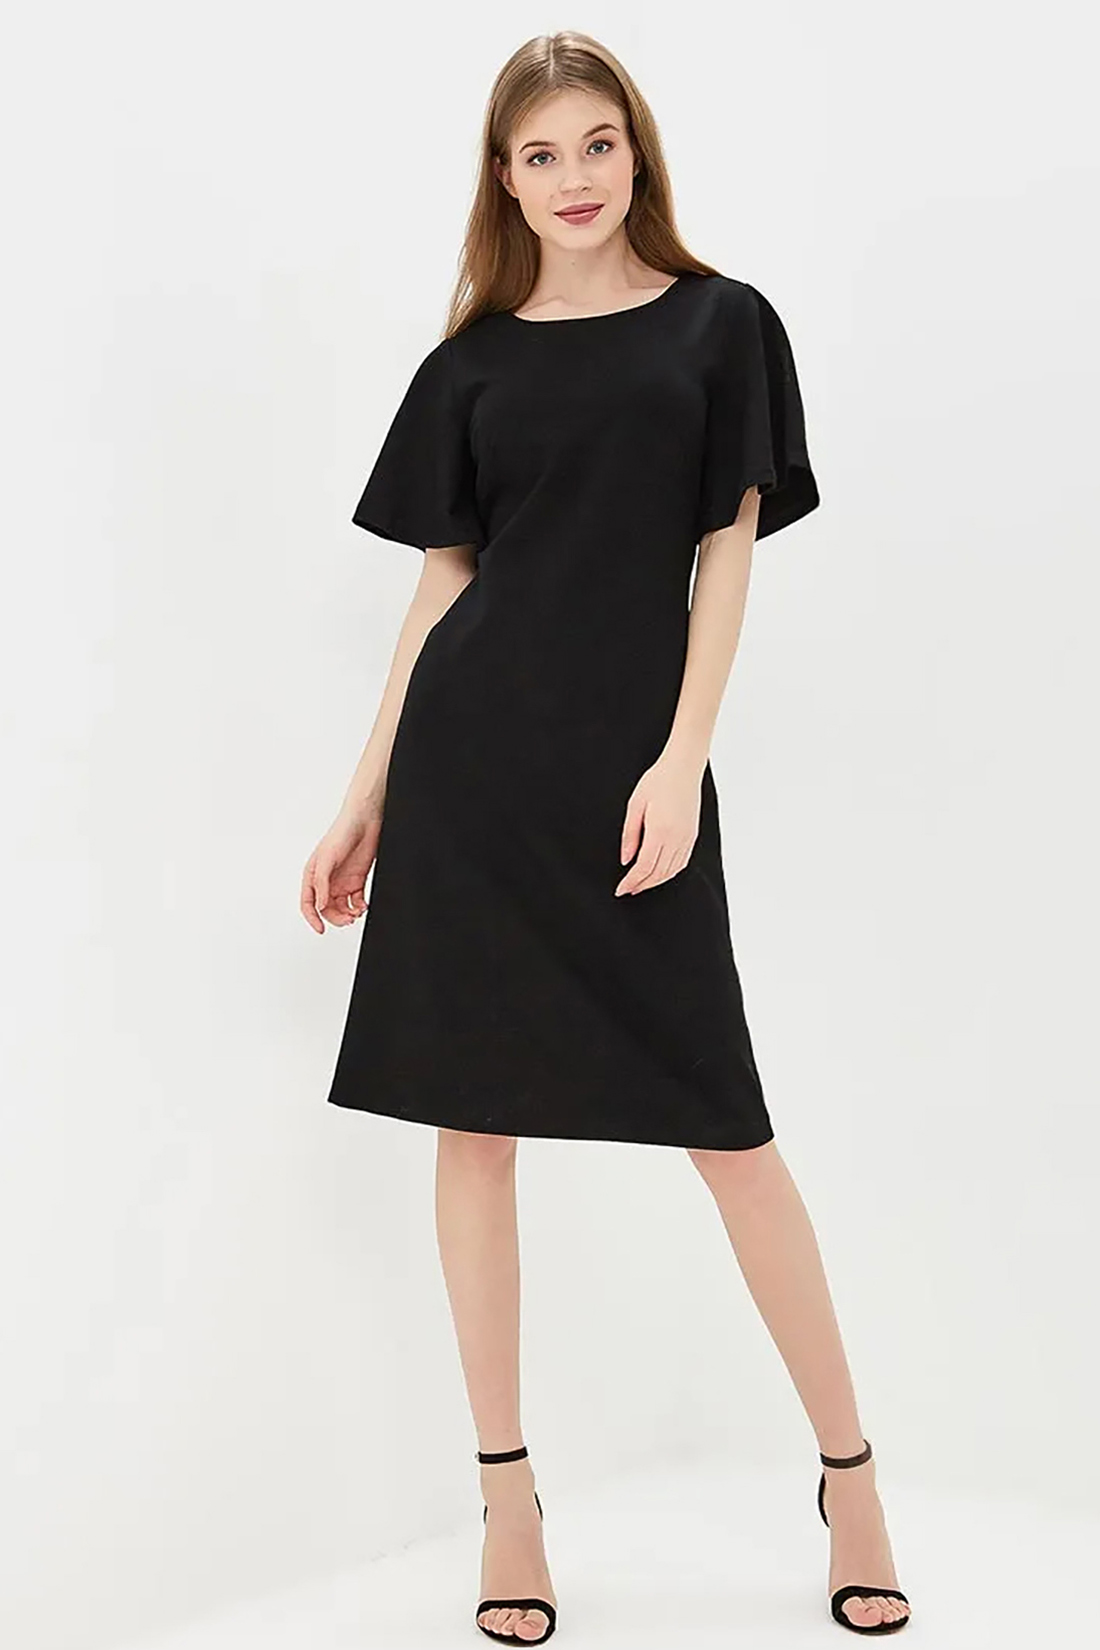 Платье с вырезом на спине (арт. baon B459028), размер XXL, цвет черный Платье с вырезом на спине (арт. baon B459028) - фото 1